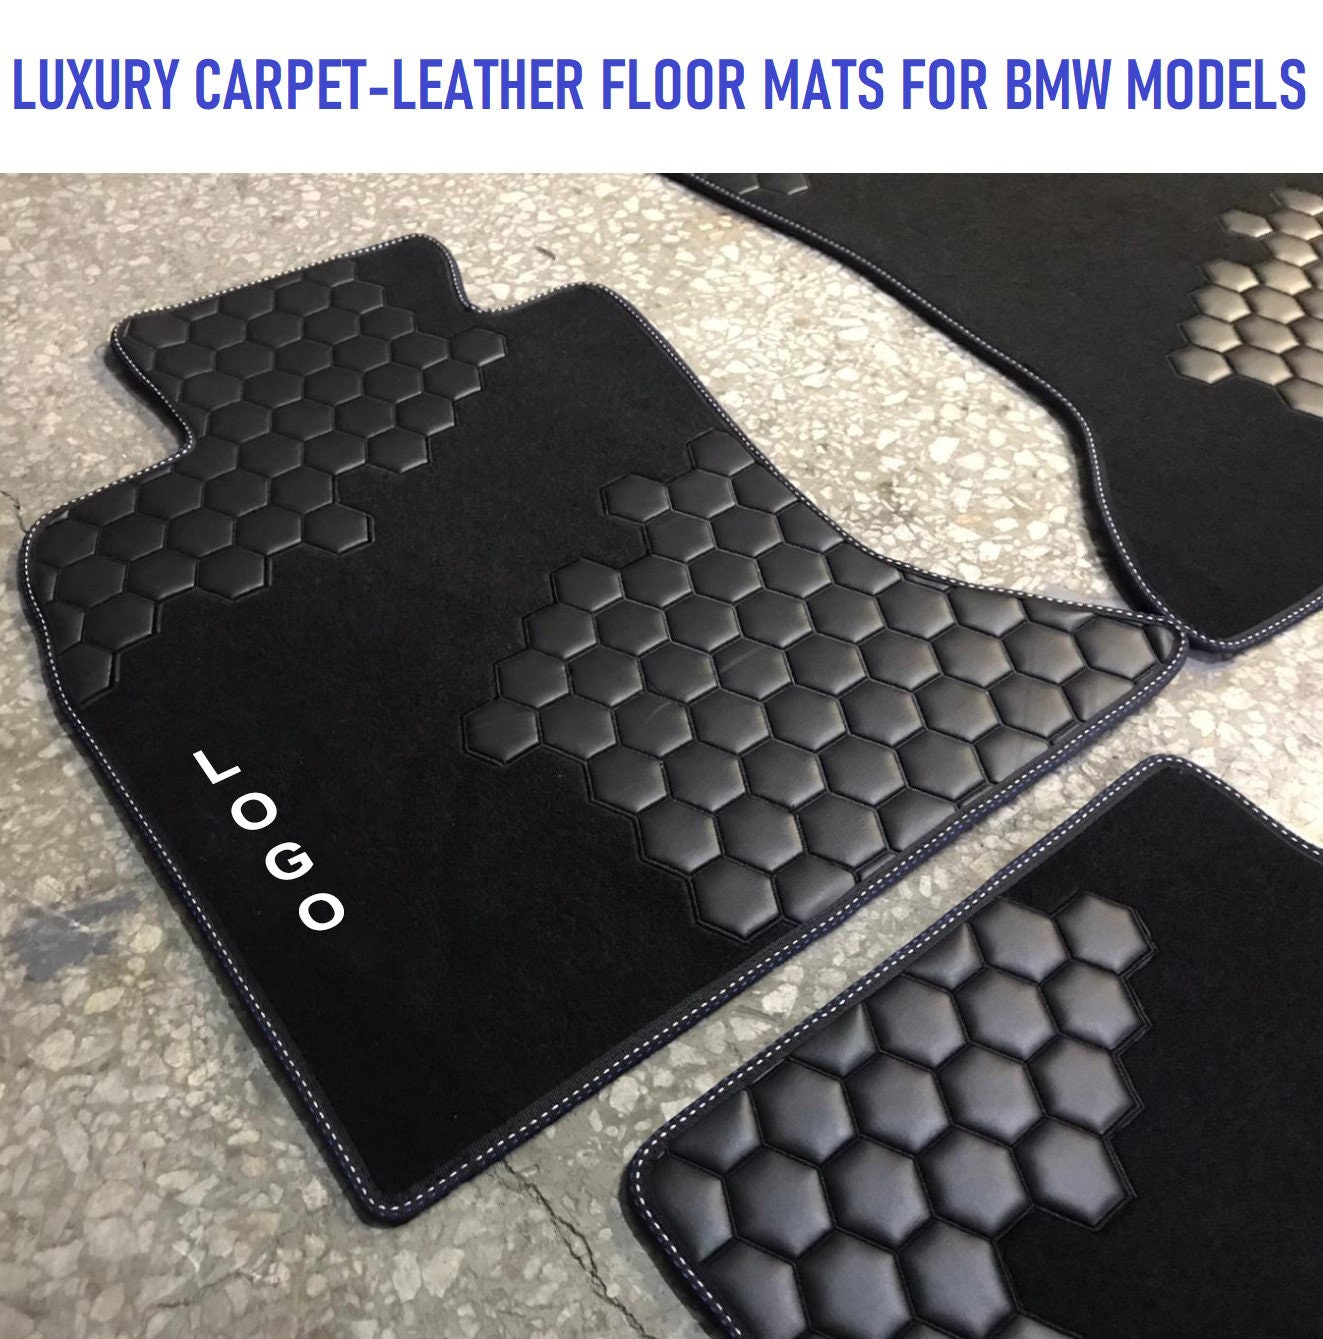 激安通販ショッピング Rean STORE3D MAXpider Custom Fit Kagu Floor Mat Gray for 2008-2014  Mini Clubman 1ST Row 2ND